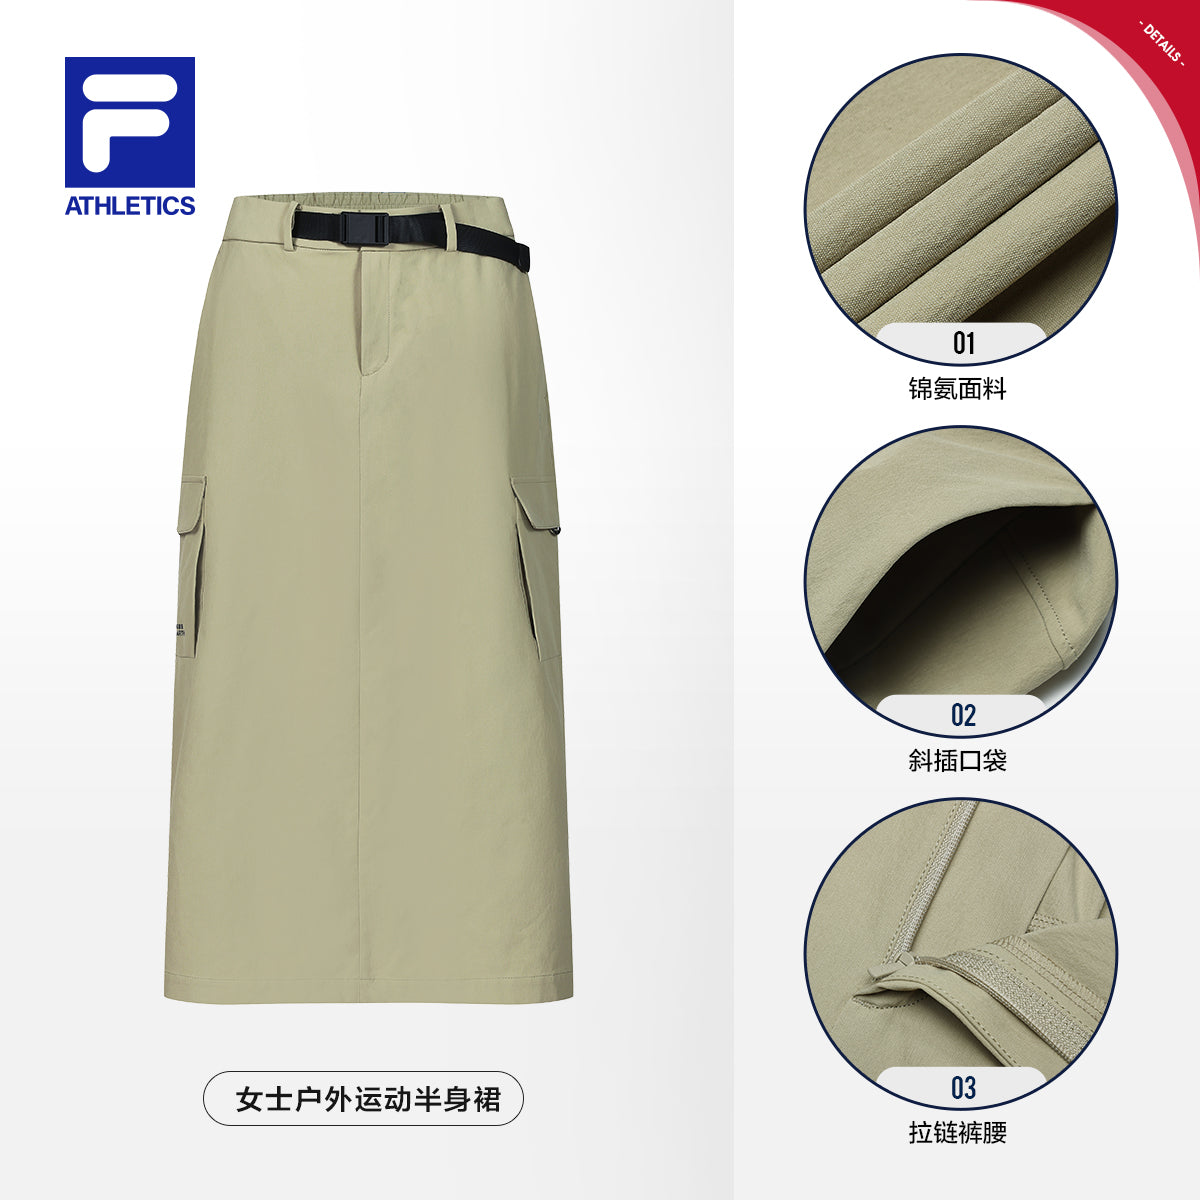 FILA CORE ATHLETICS EXPLORE NATURE'S WONDER Women Skirt (Light Khaki)